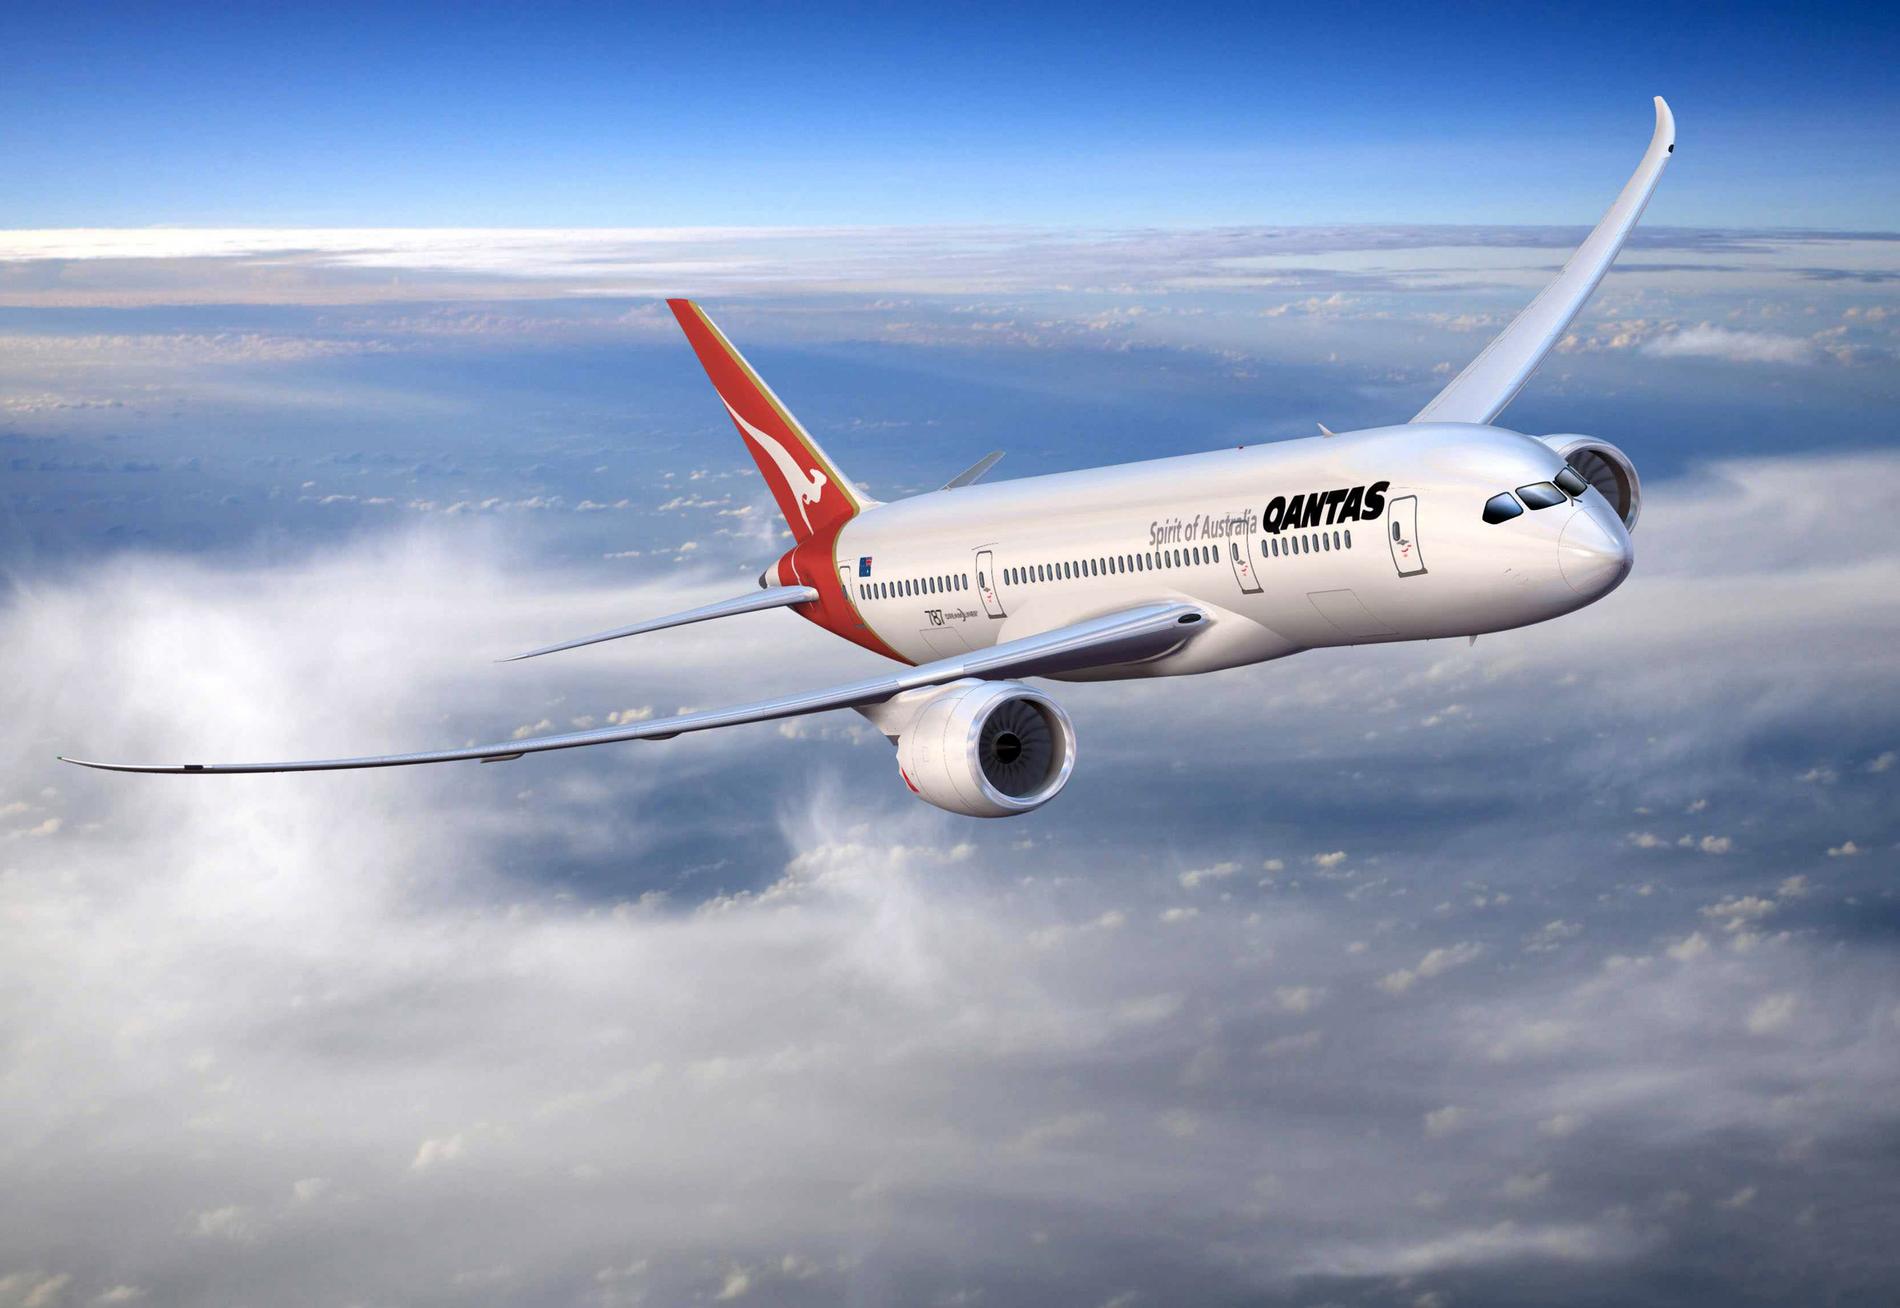 Nu har Qantas slagit världsrekord med nya flygningen.